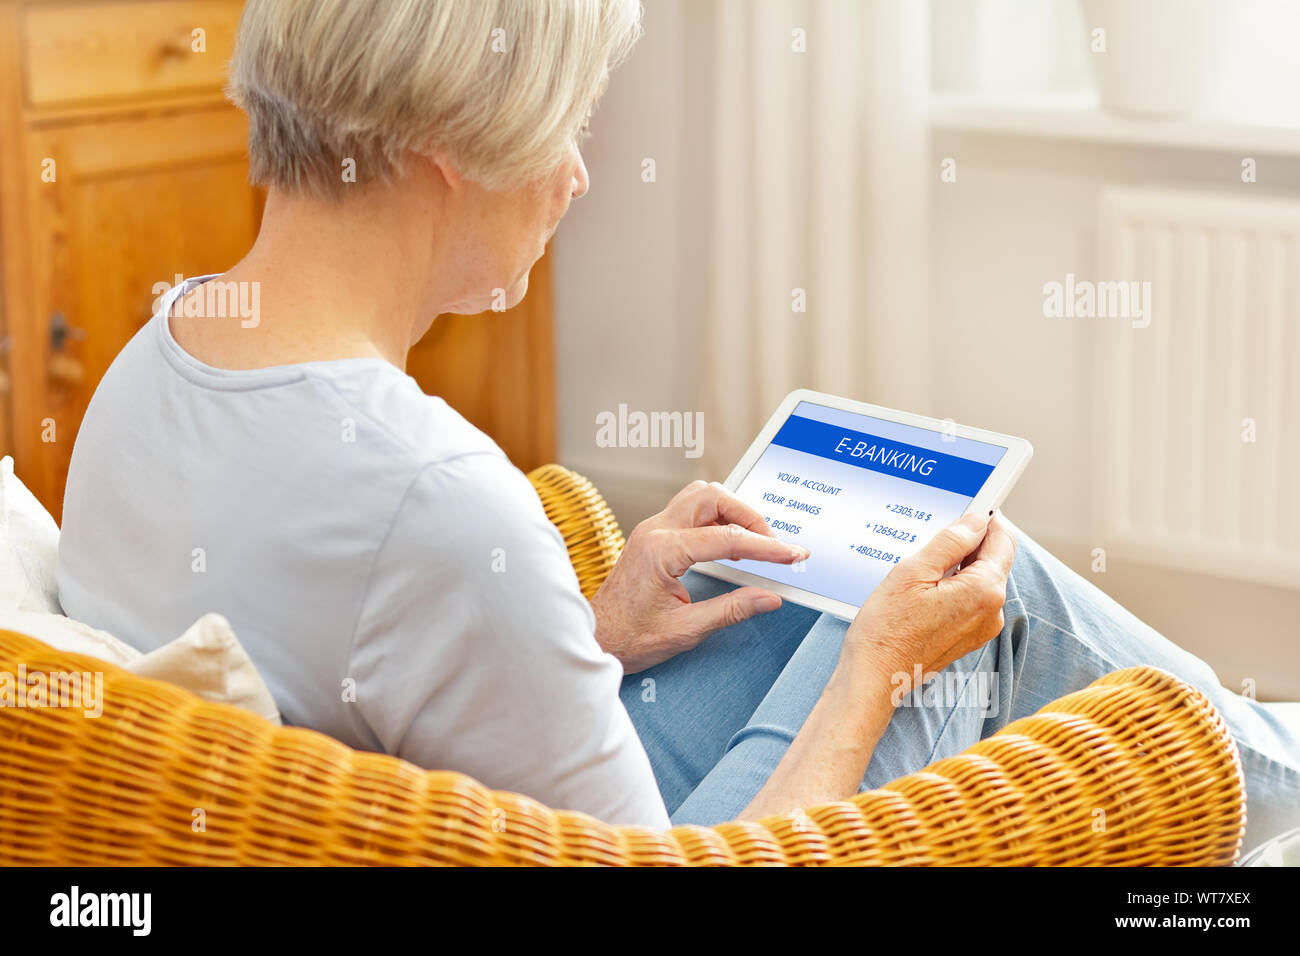 Les cadres et les services bancaires en ligne concept, personnes âgées woman with tablet computer at home, touching screen Banque D'Images